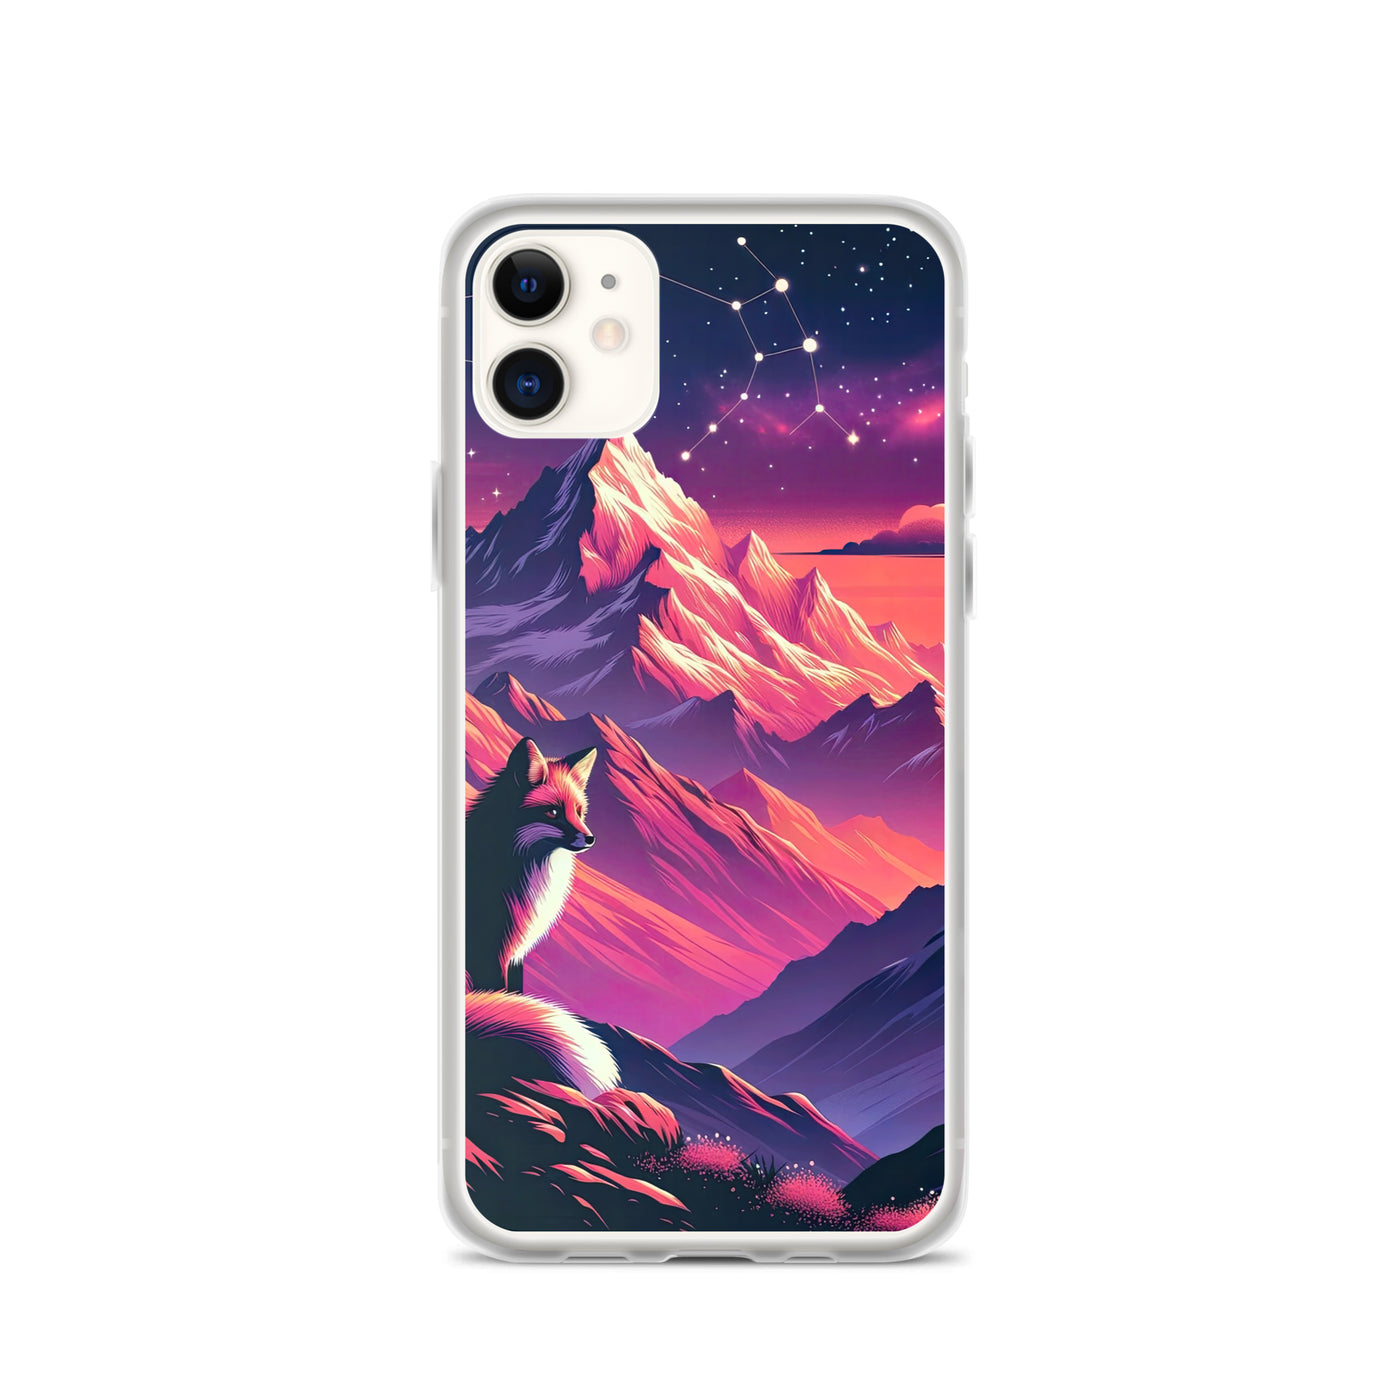 Fuchs im dramatischen Sonnenuntergang: Digitale Bergillustration in Abendfarben - iPhone Schutzhülle (durchsichtig) camping xxx yyy zzz iPhone 11